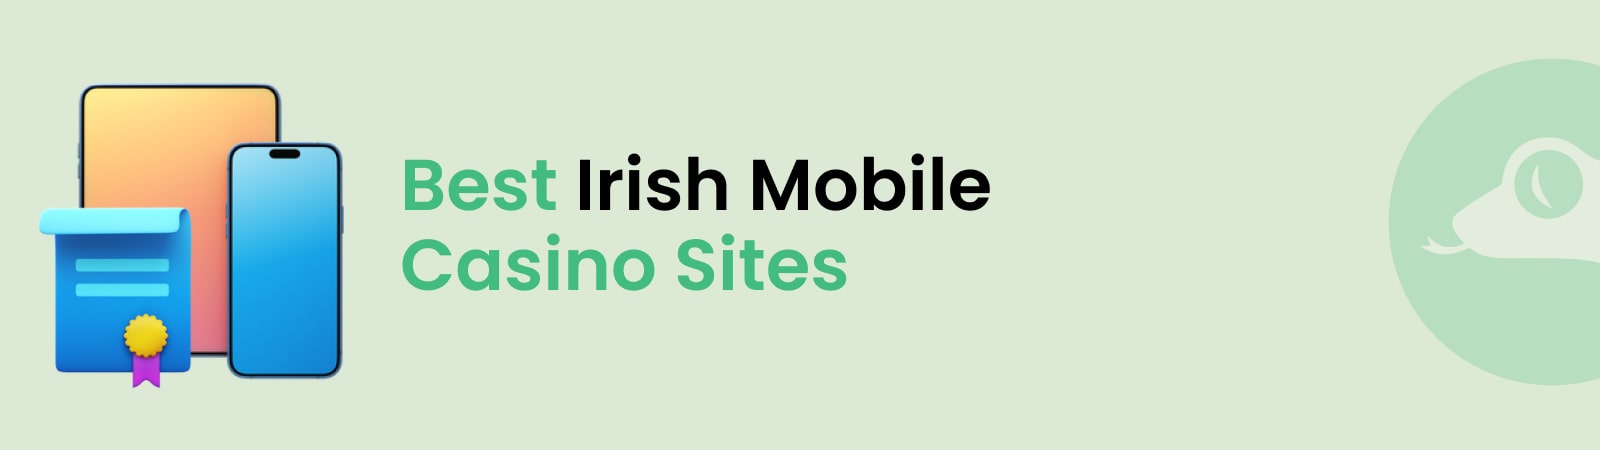 best irish mobile casino sites